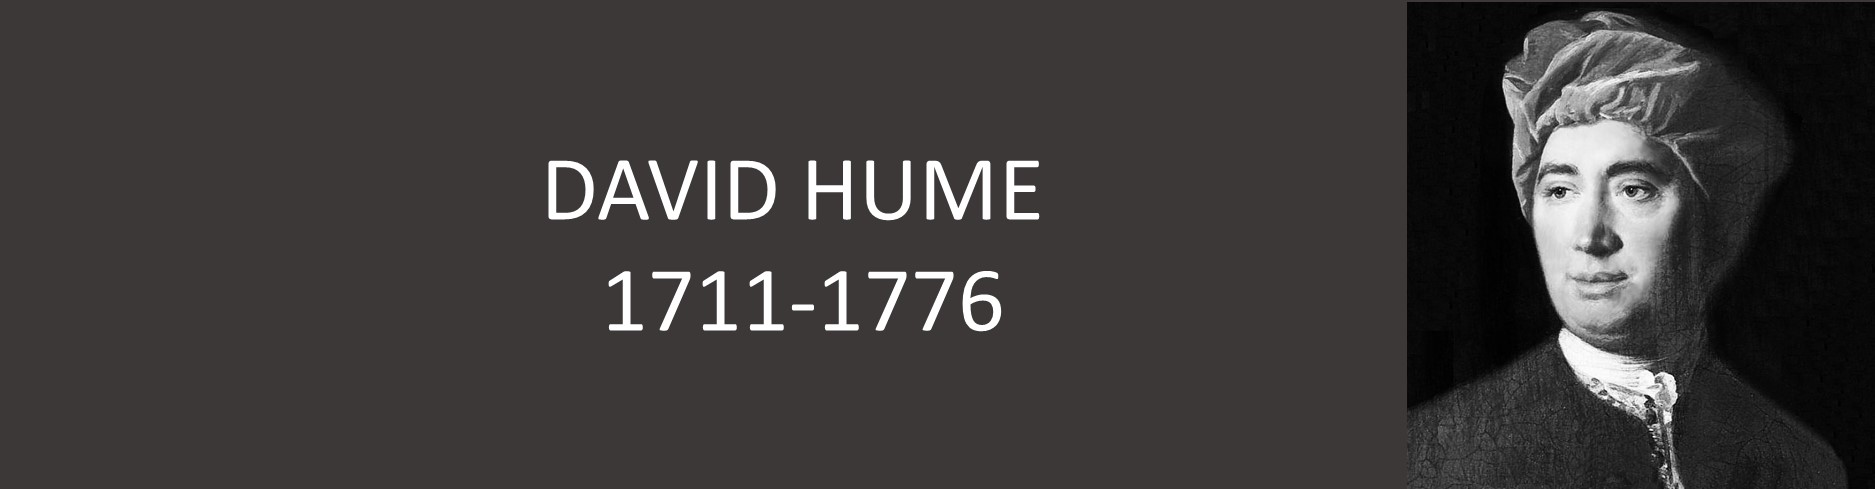 DAVID HUME (1711-1776)